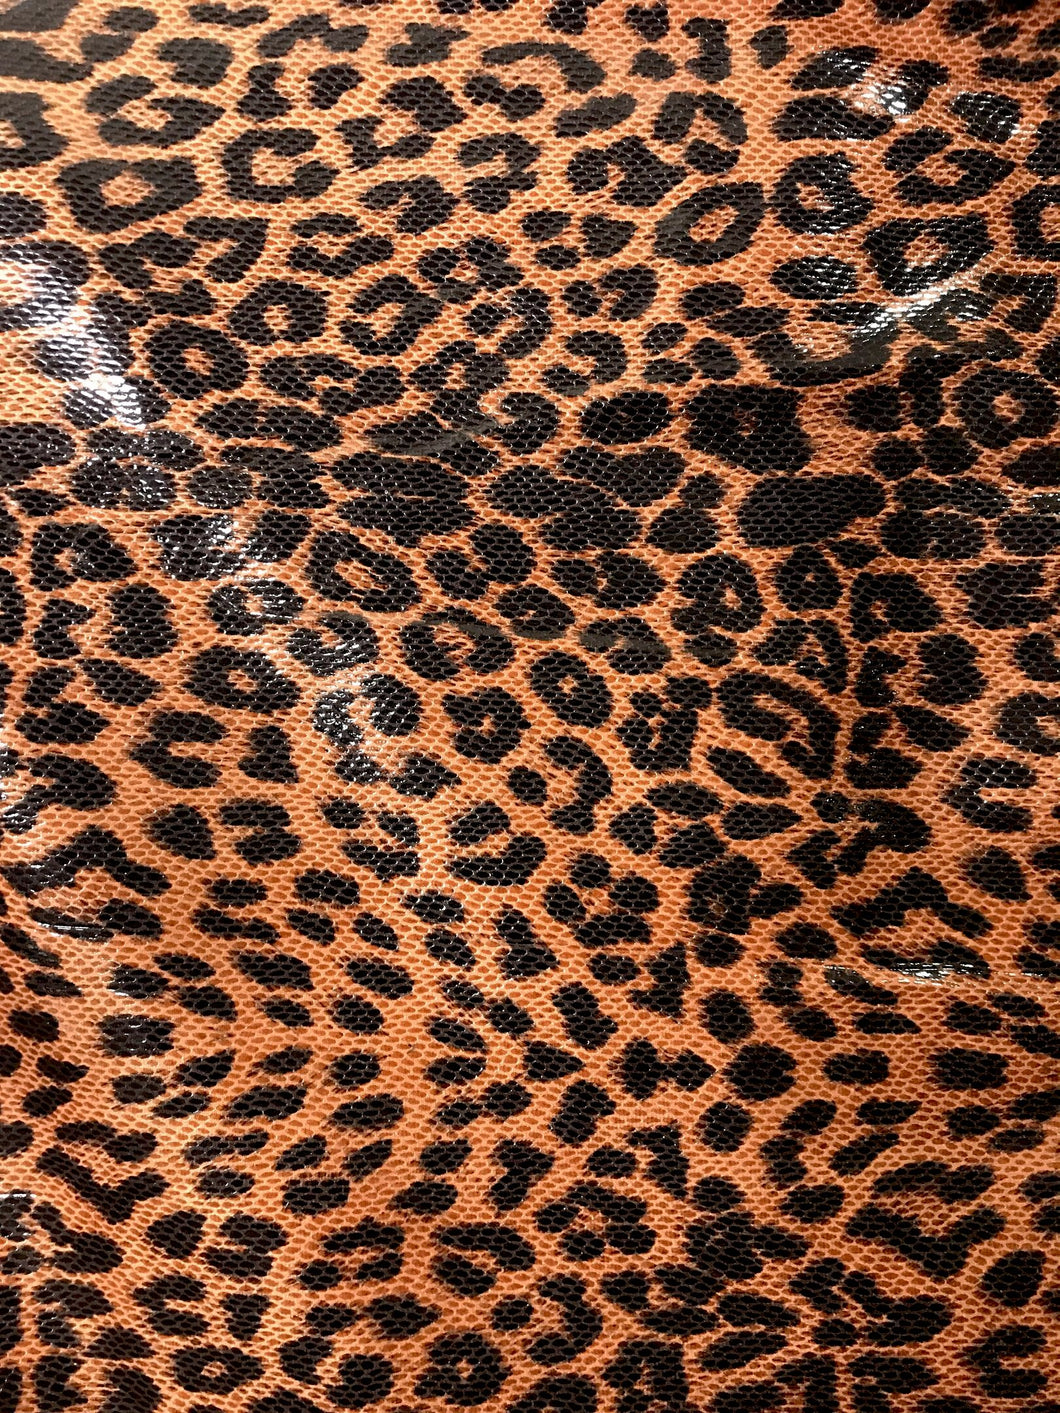 Sand Leopard print faux vegan leather